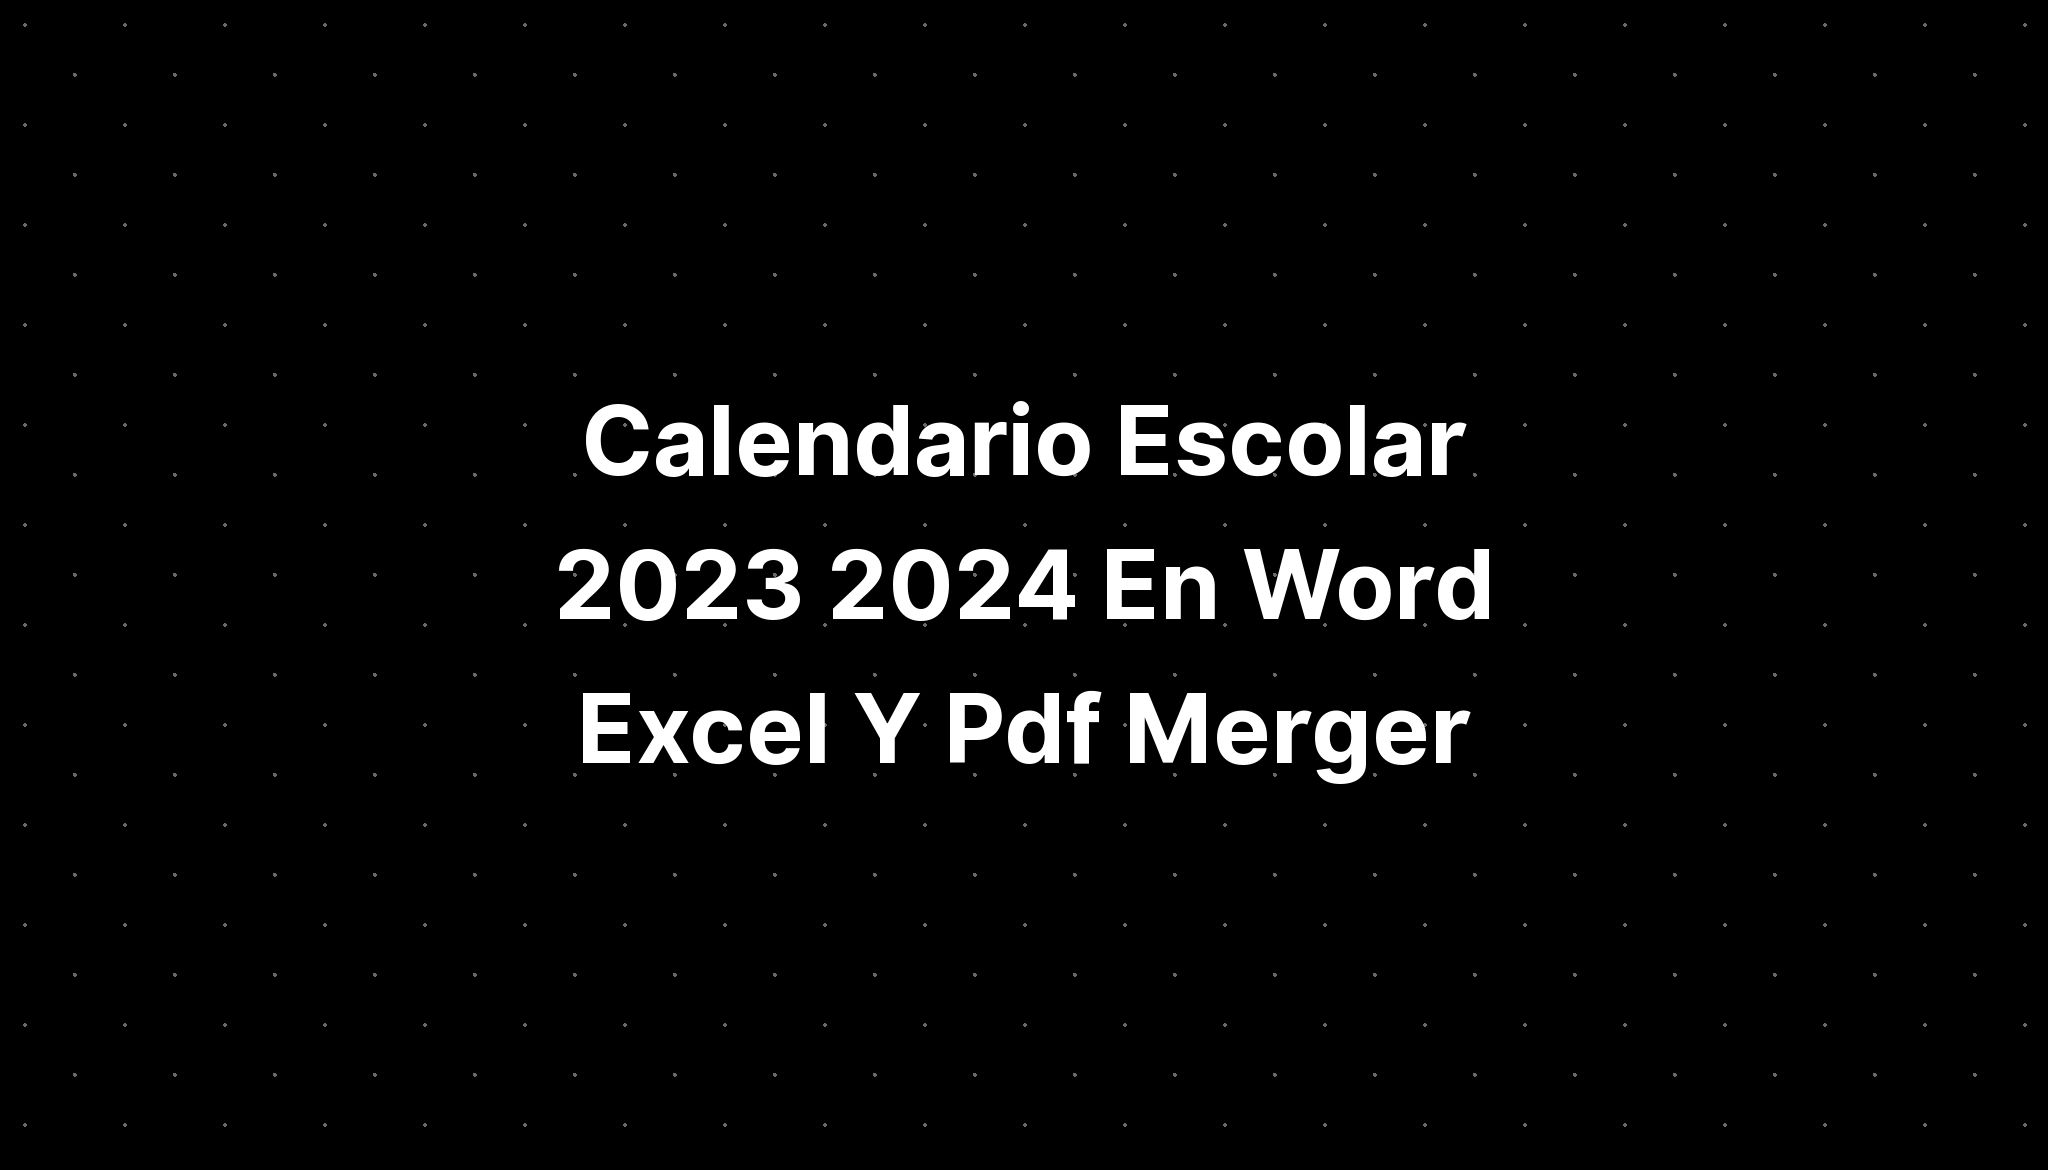 Calendario Escolar 2023 2024 En Word Excel Y Pdf Merger IMAGESEE